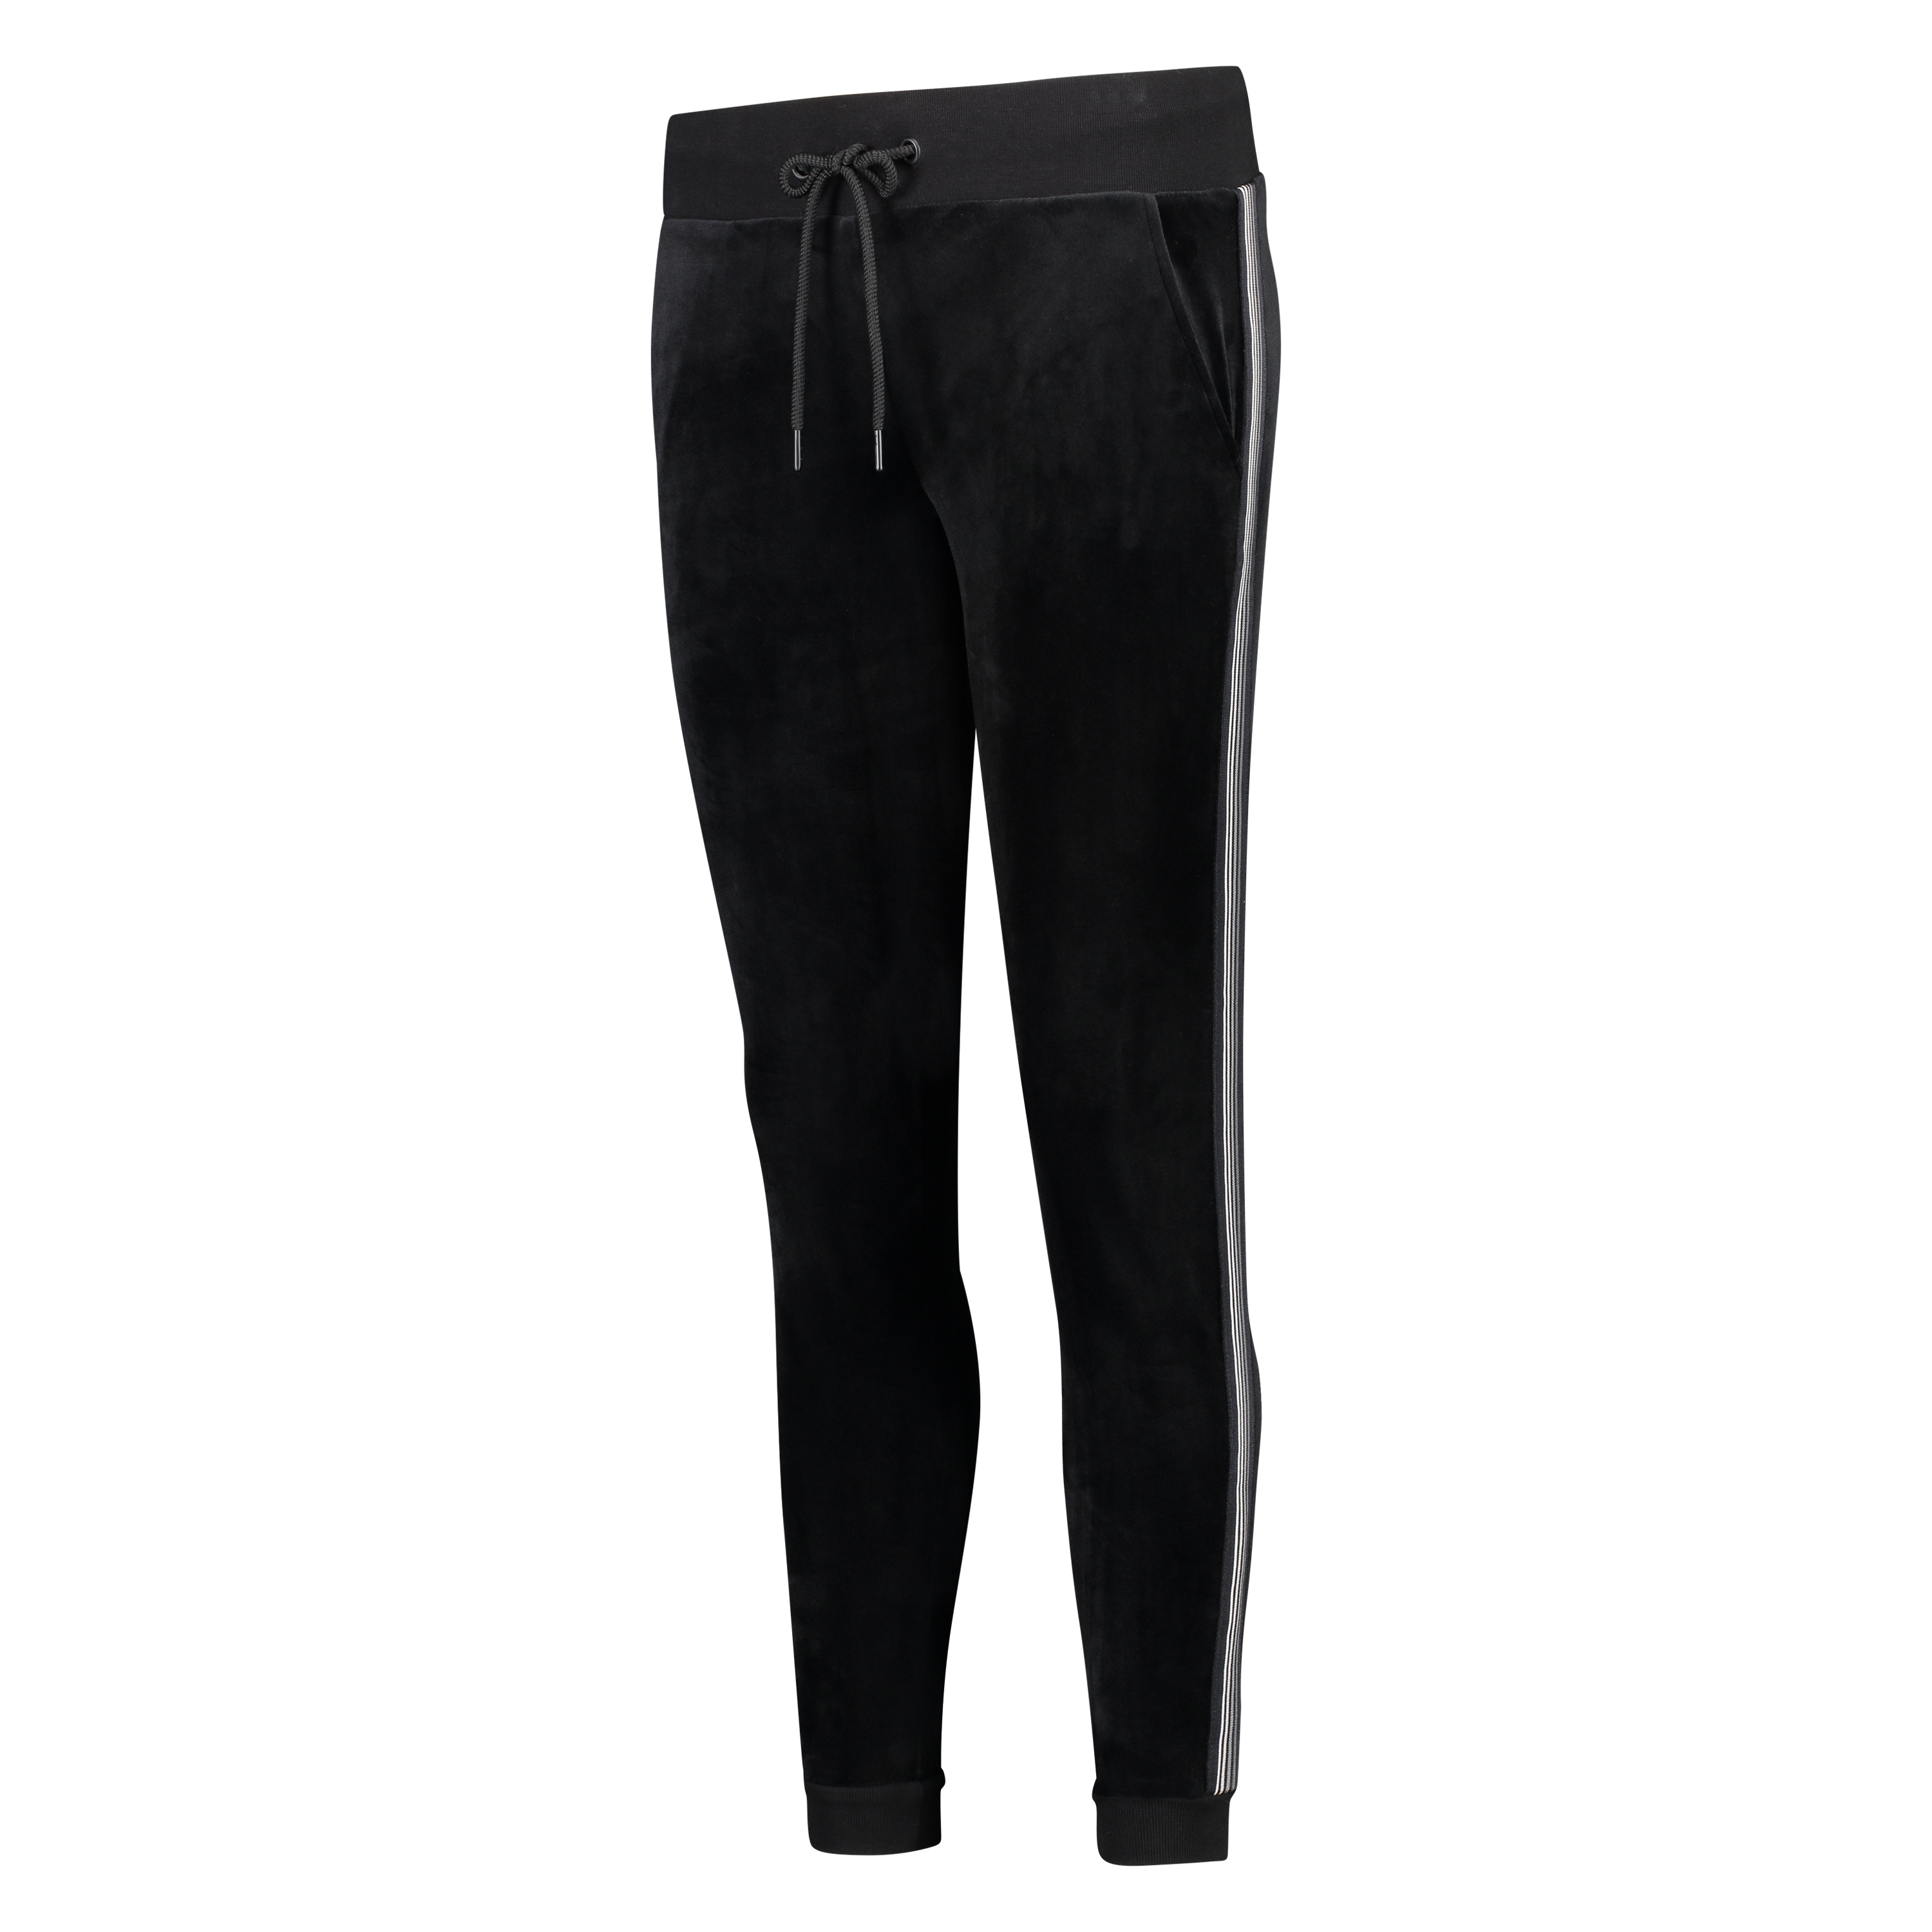 HKMX Velvet Sports Pants, Black, main